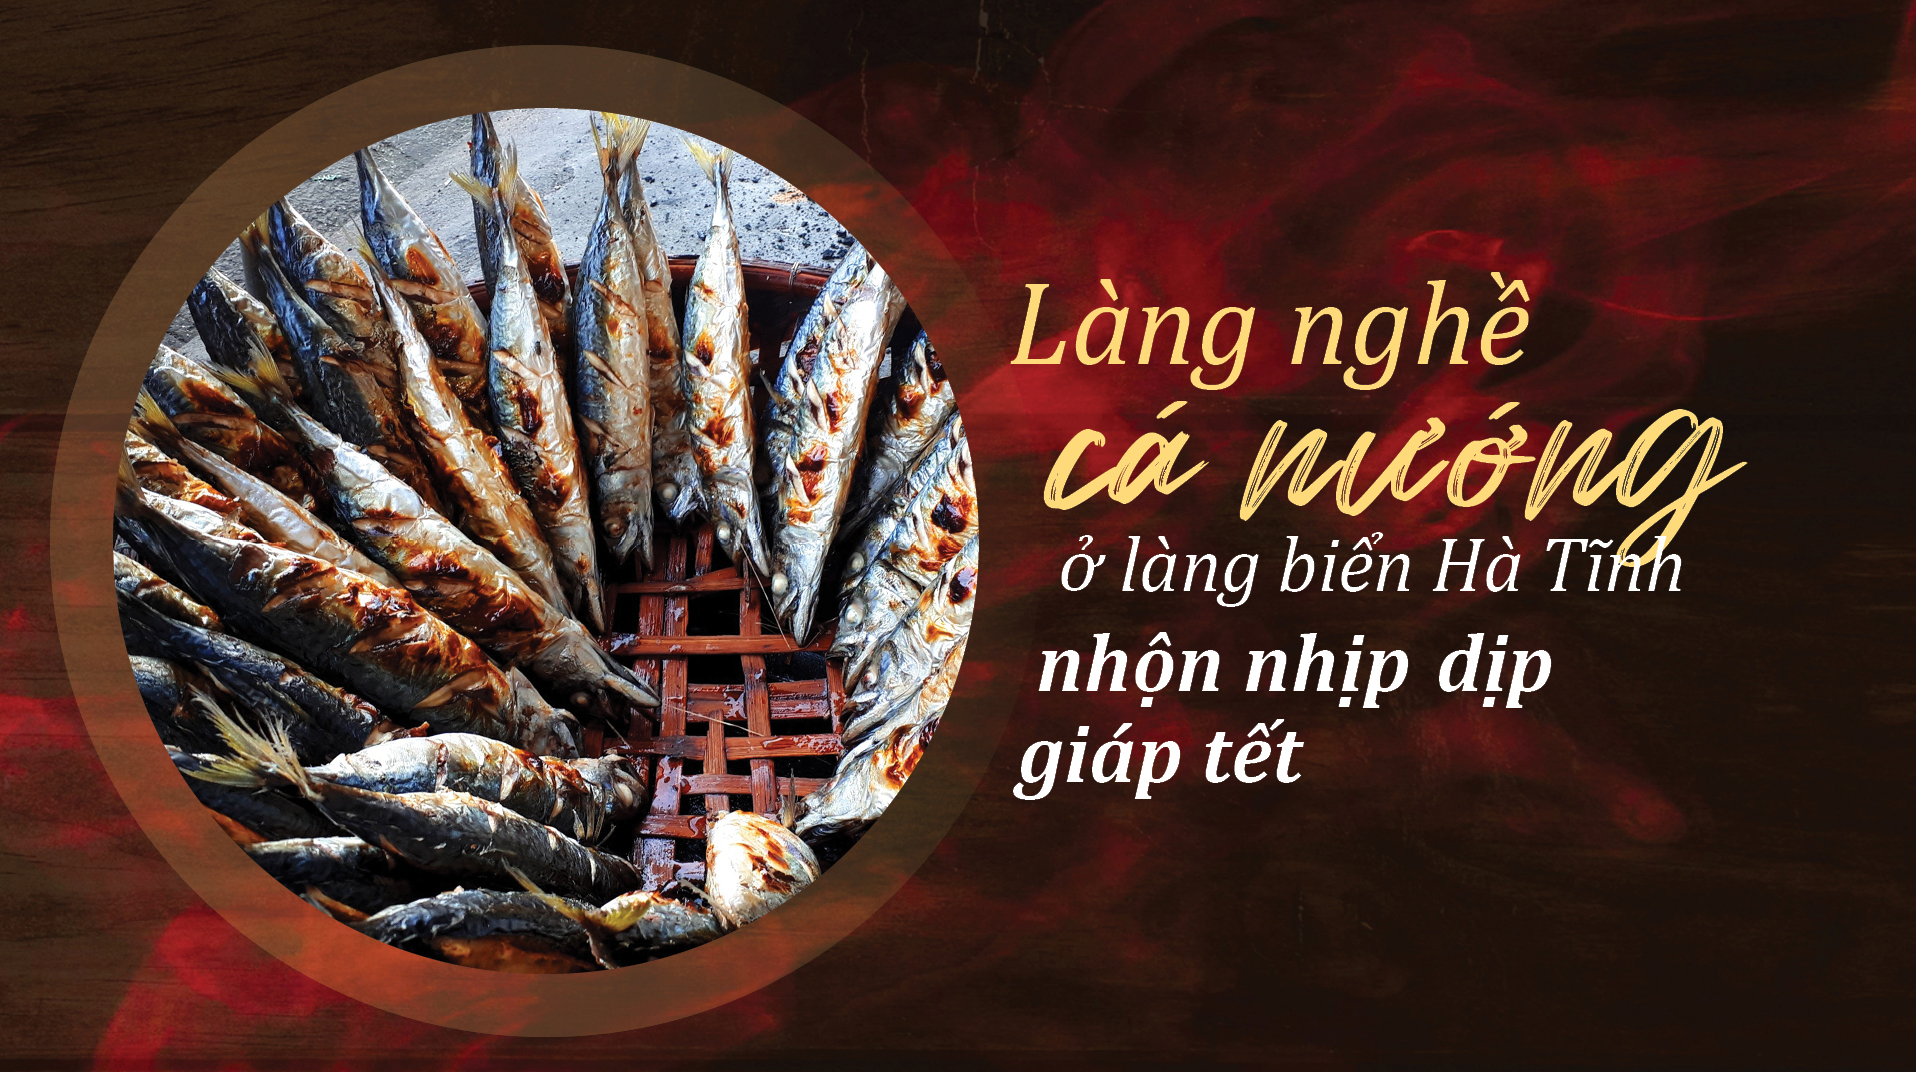 Làng nghề cá nướng ở Hà Tĩnh nhộn nhịp dịp giáp tết